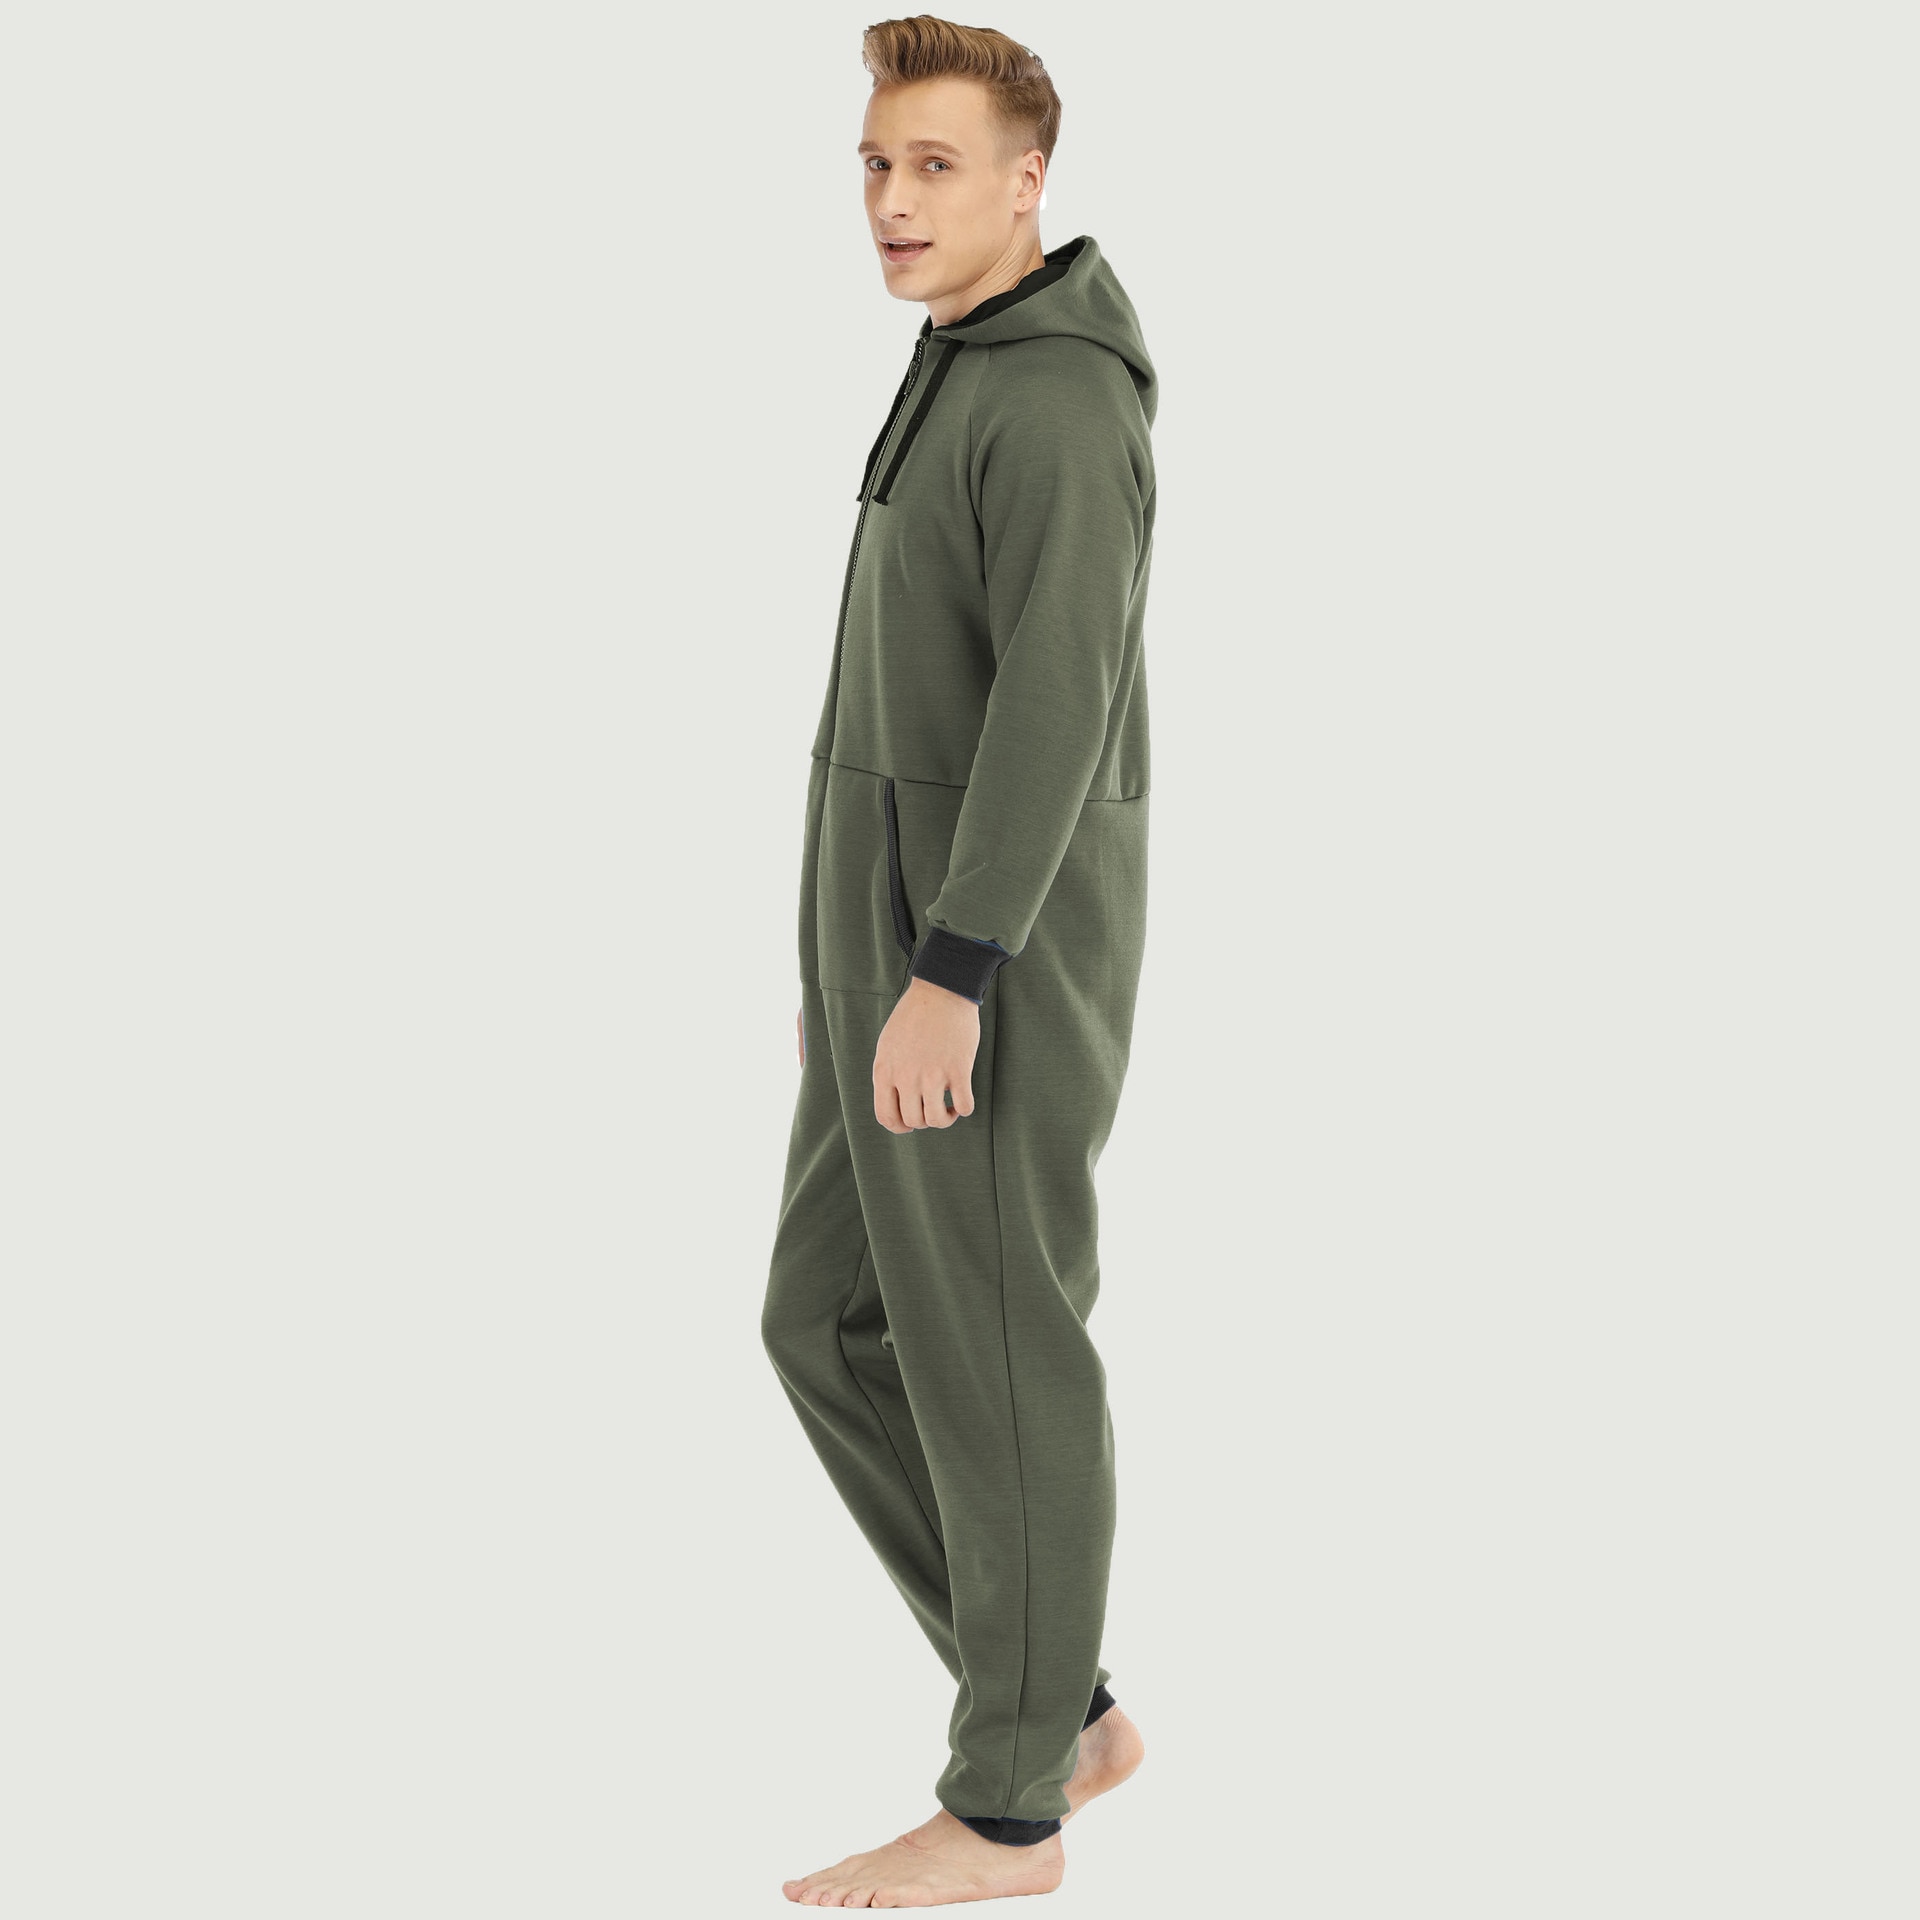 Jumpsuit Men Pajamas Solid Onesie Adults Autumn Winter Splicing Casual Hoodie Zipper Sleepwear Hooded Suits